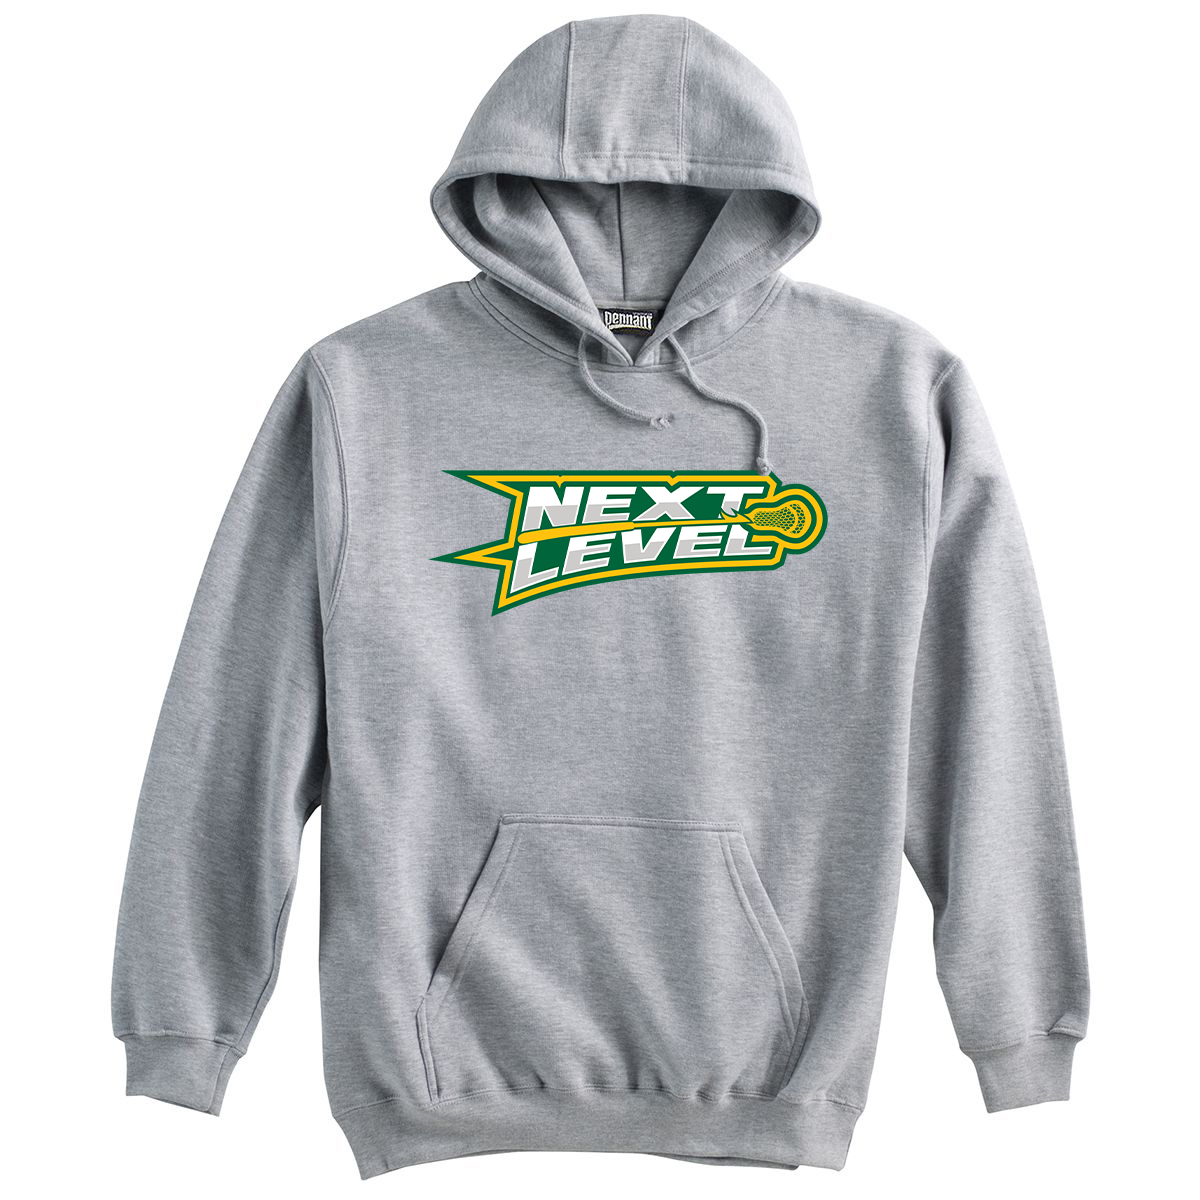 Next Level Northwest Lacrosse Sweatshirt